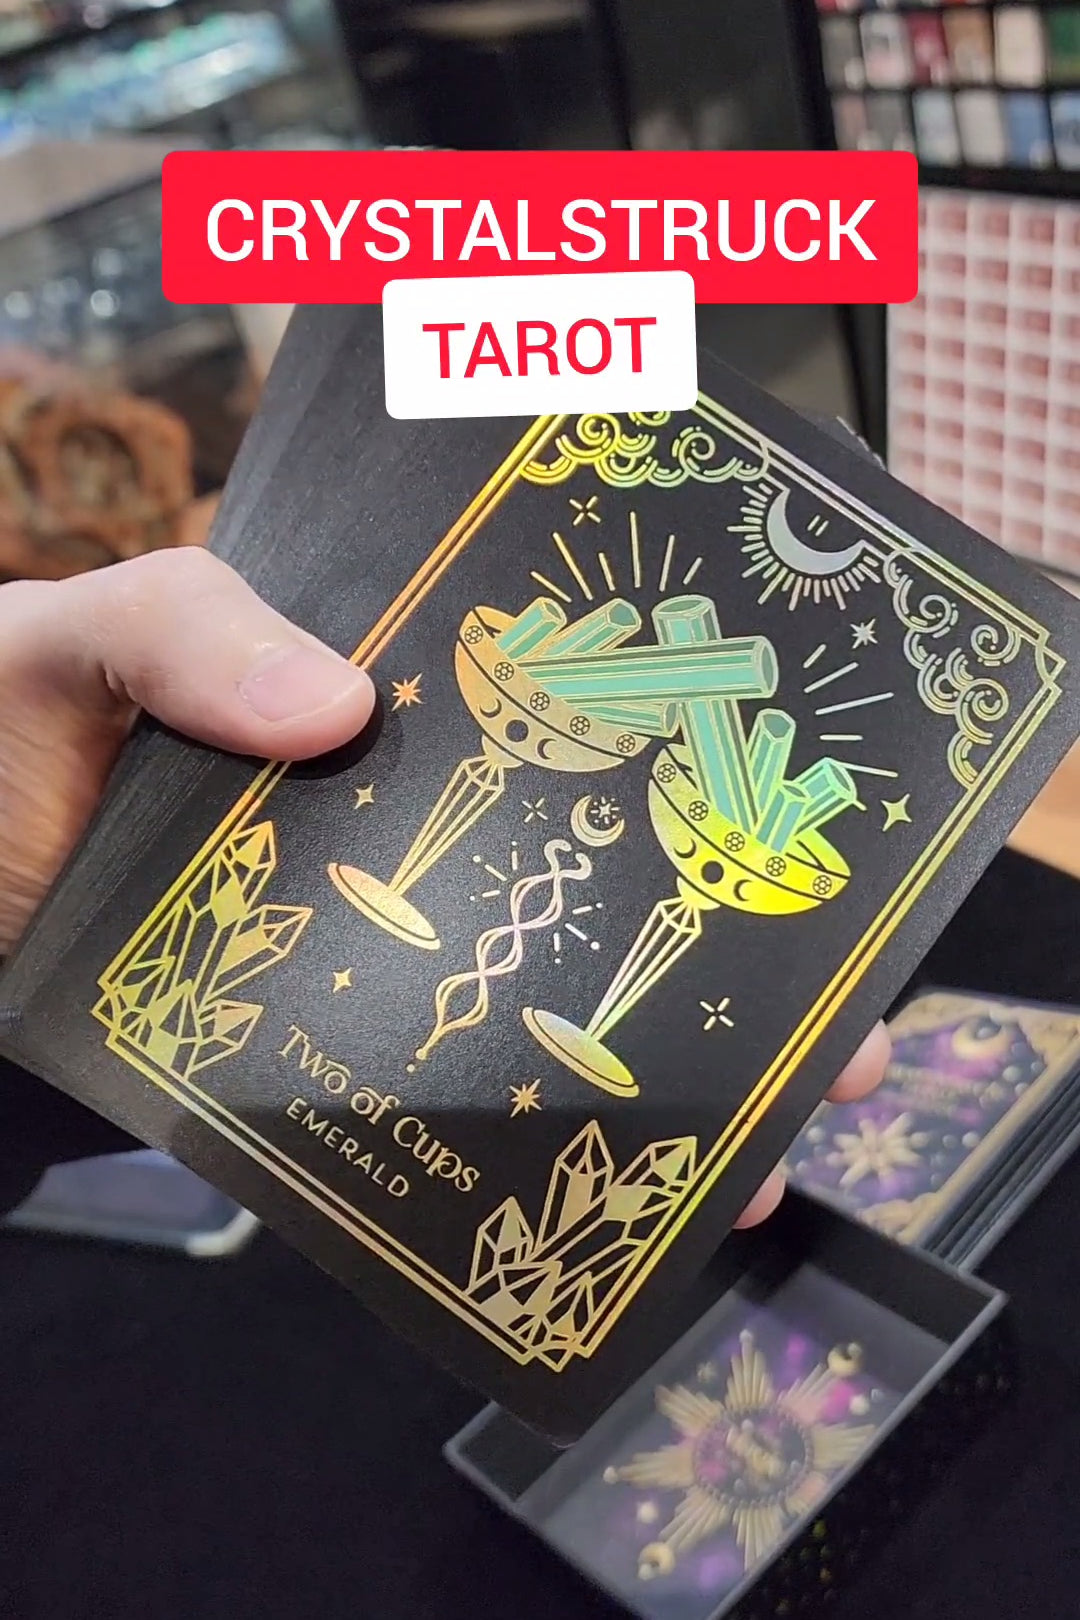 Crystalstruck Tarot Cards by Moonstruck Crystals